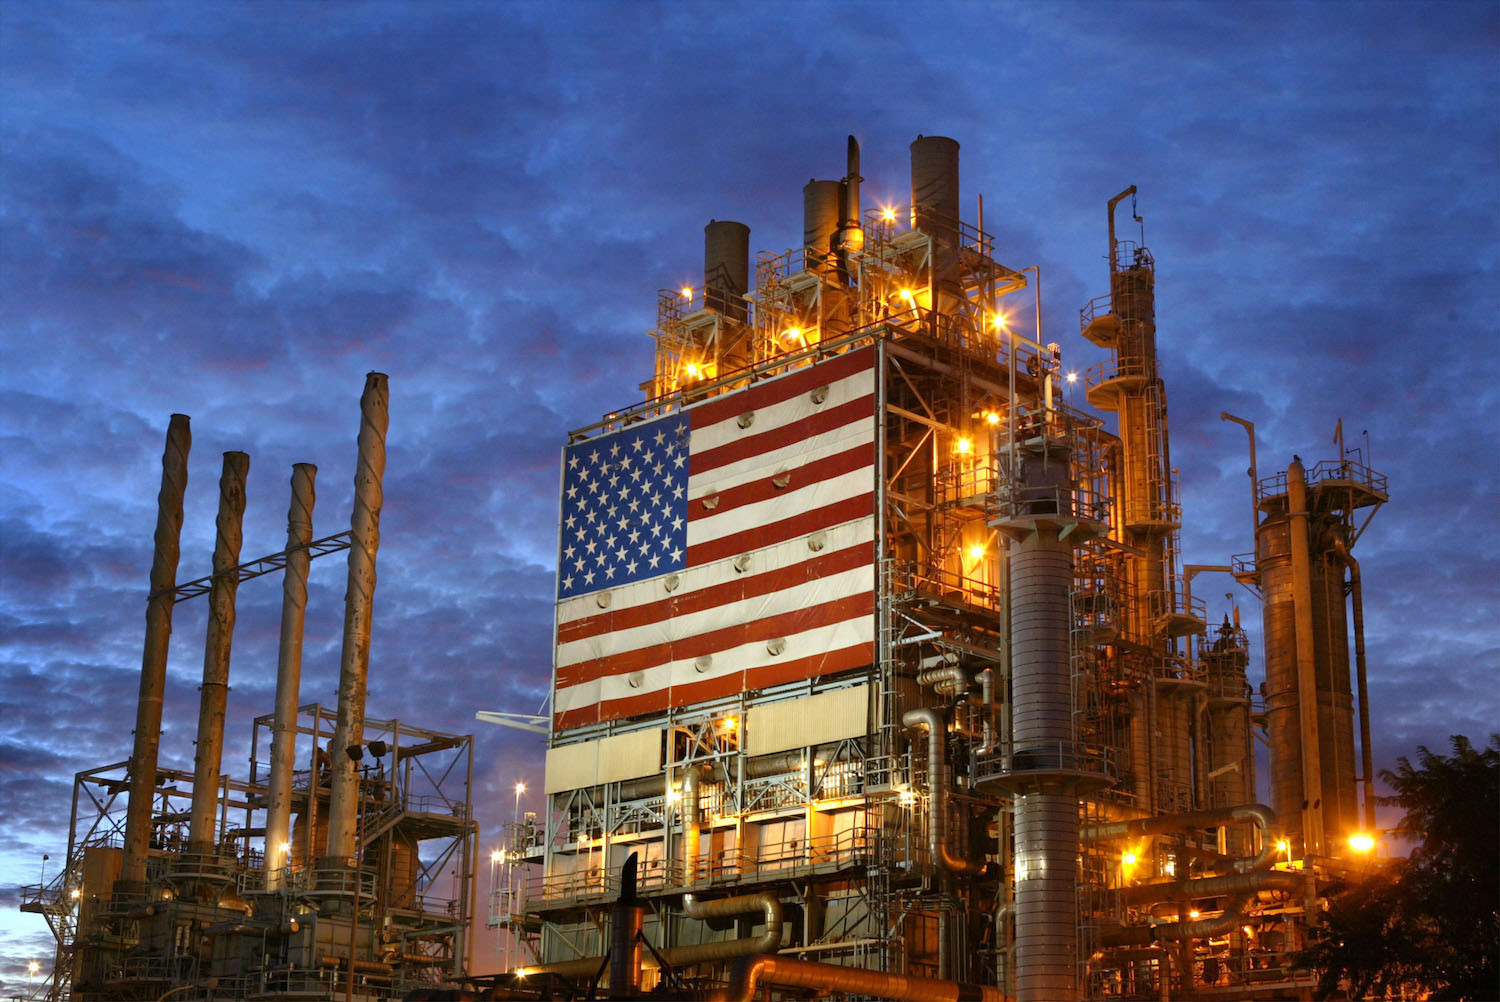 ذخایر نفت آمریکا کاهش یافت